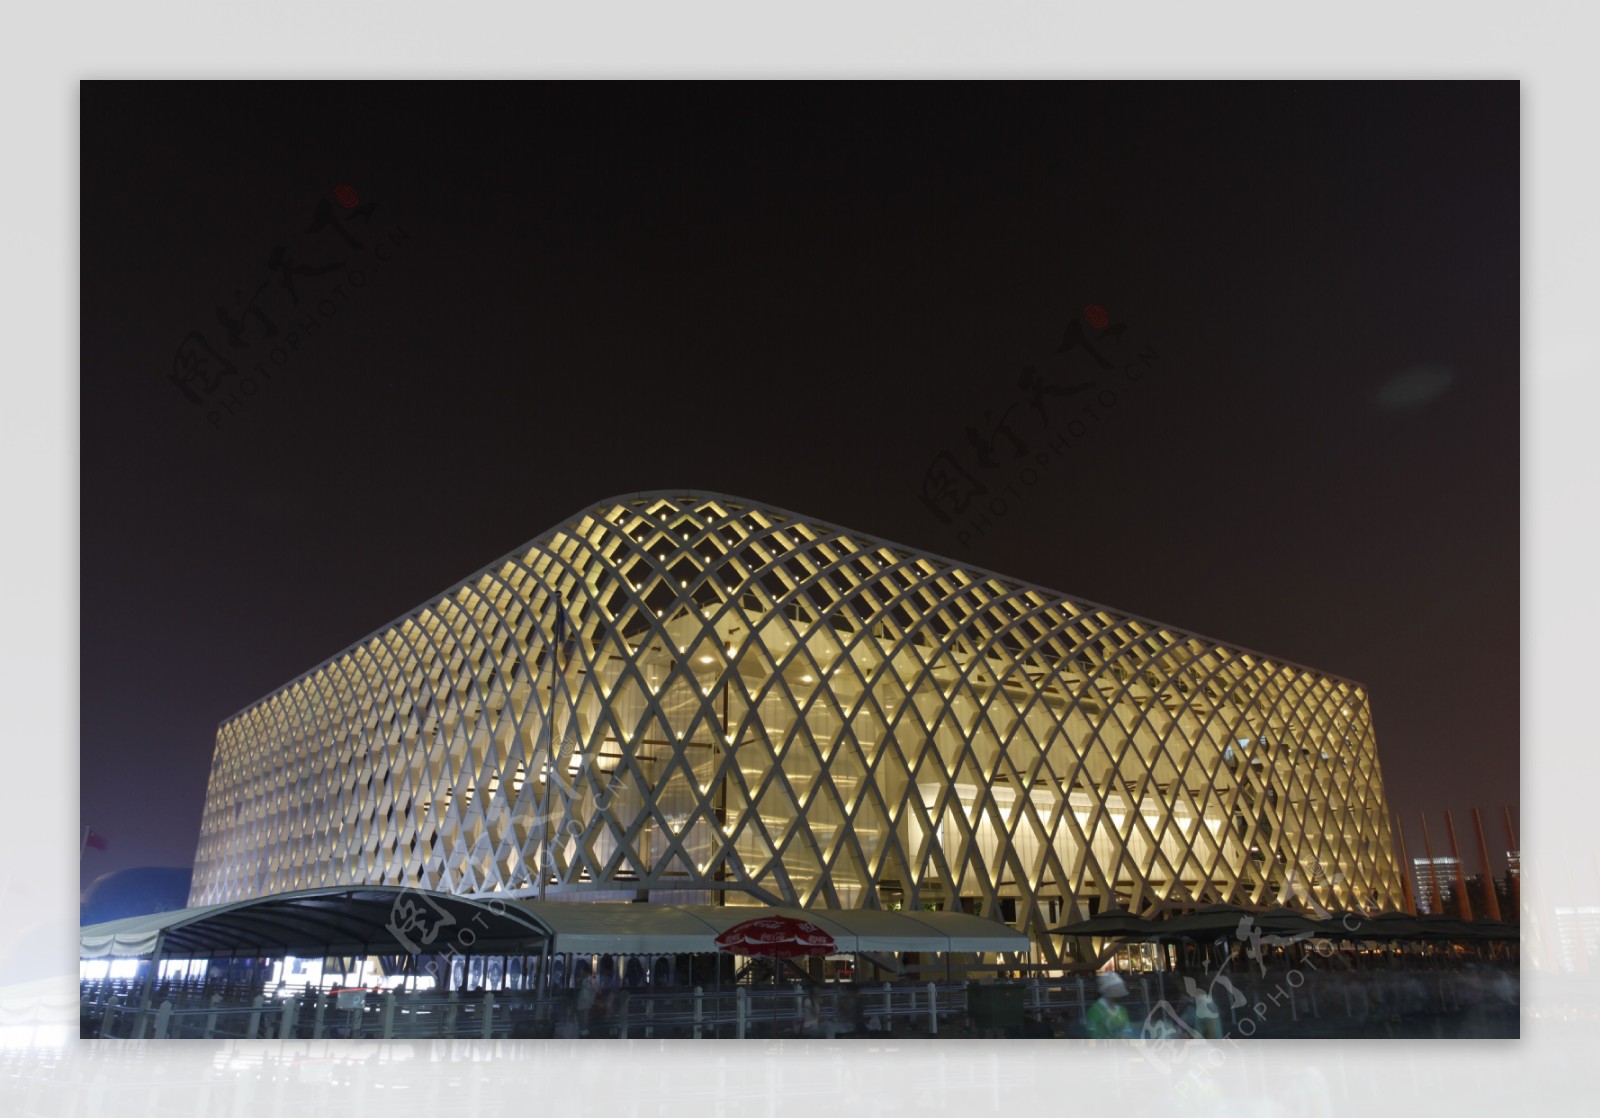 上海世博会法国馆夜景照片图片